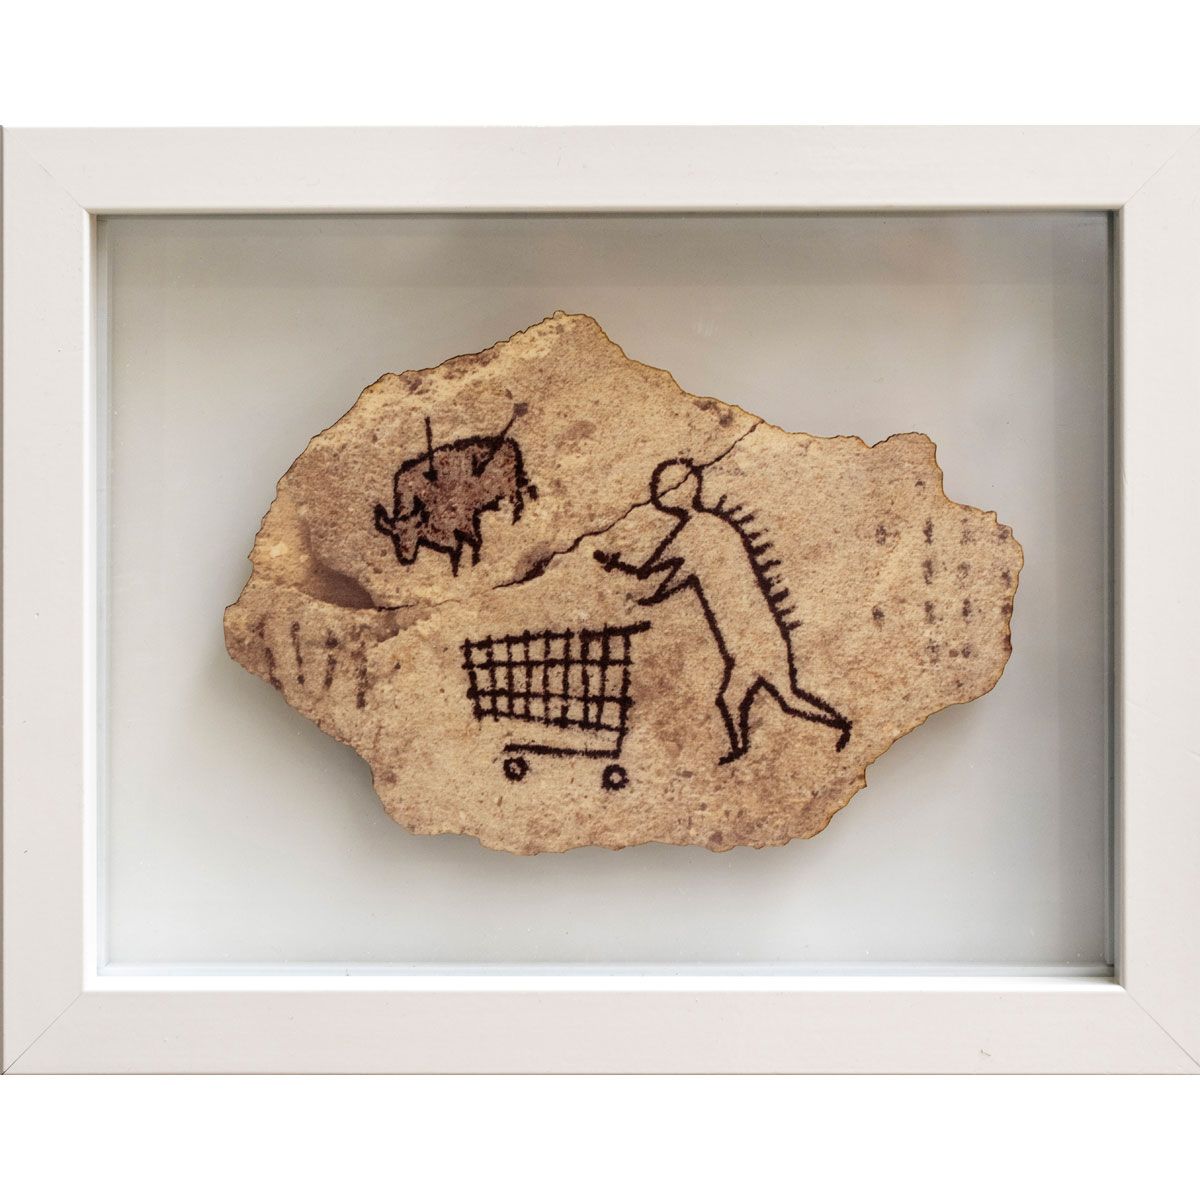 Null 班克西，英国人，生于1974年

佩克汉姆岩石 - 木制明信片，2017年

2005年伦敦大英博物馆收藏的原版雕塑的木版

证书：害虫控制

12 &hellip;